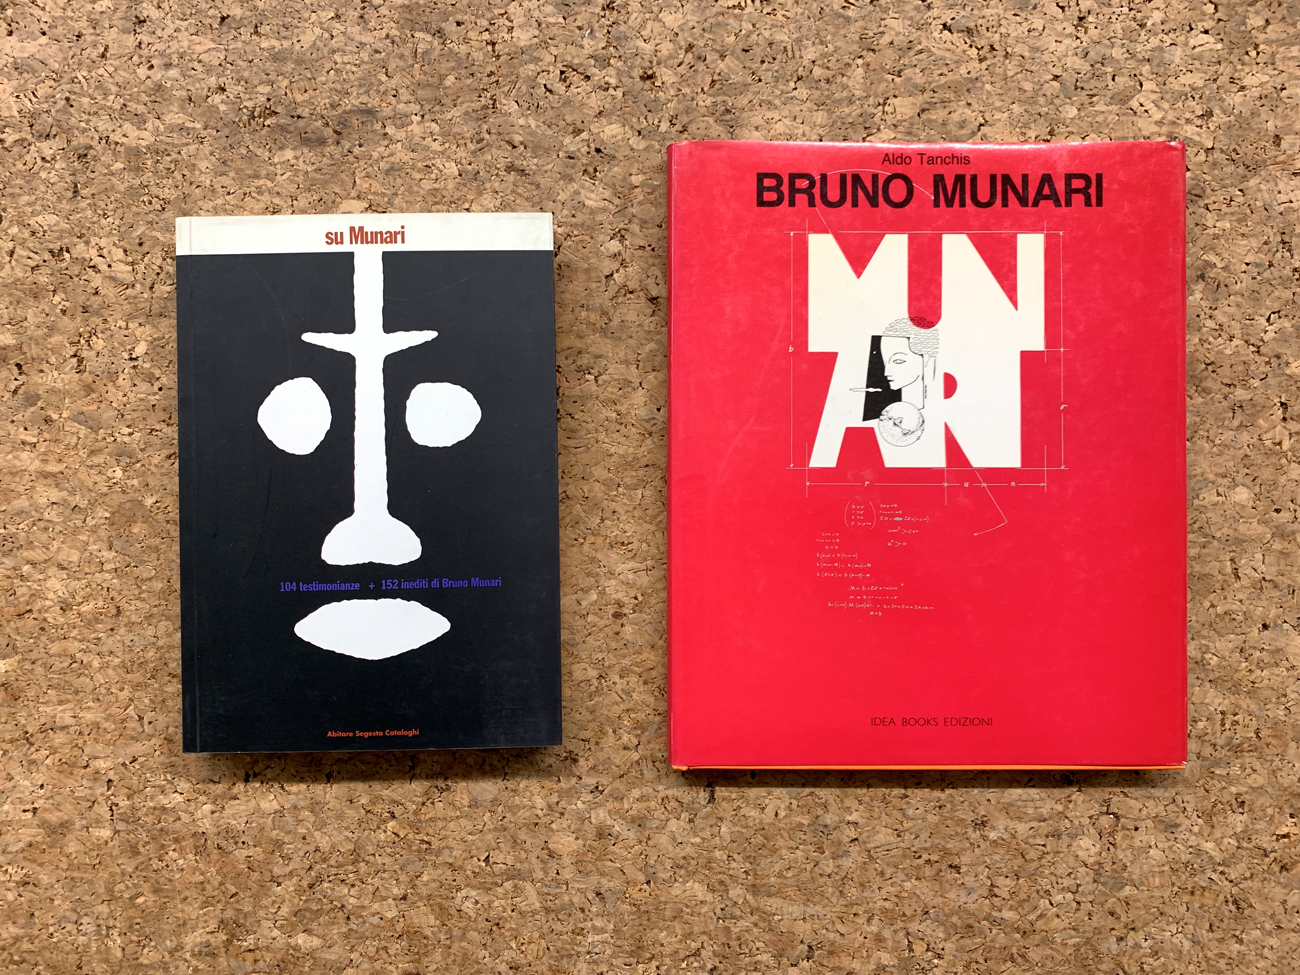 BRUNO MUNARI - Lotto unico di 2 cataloghi: